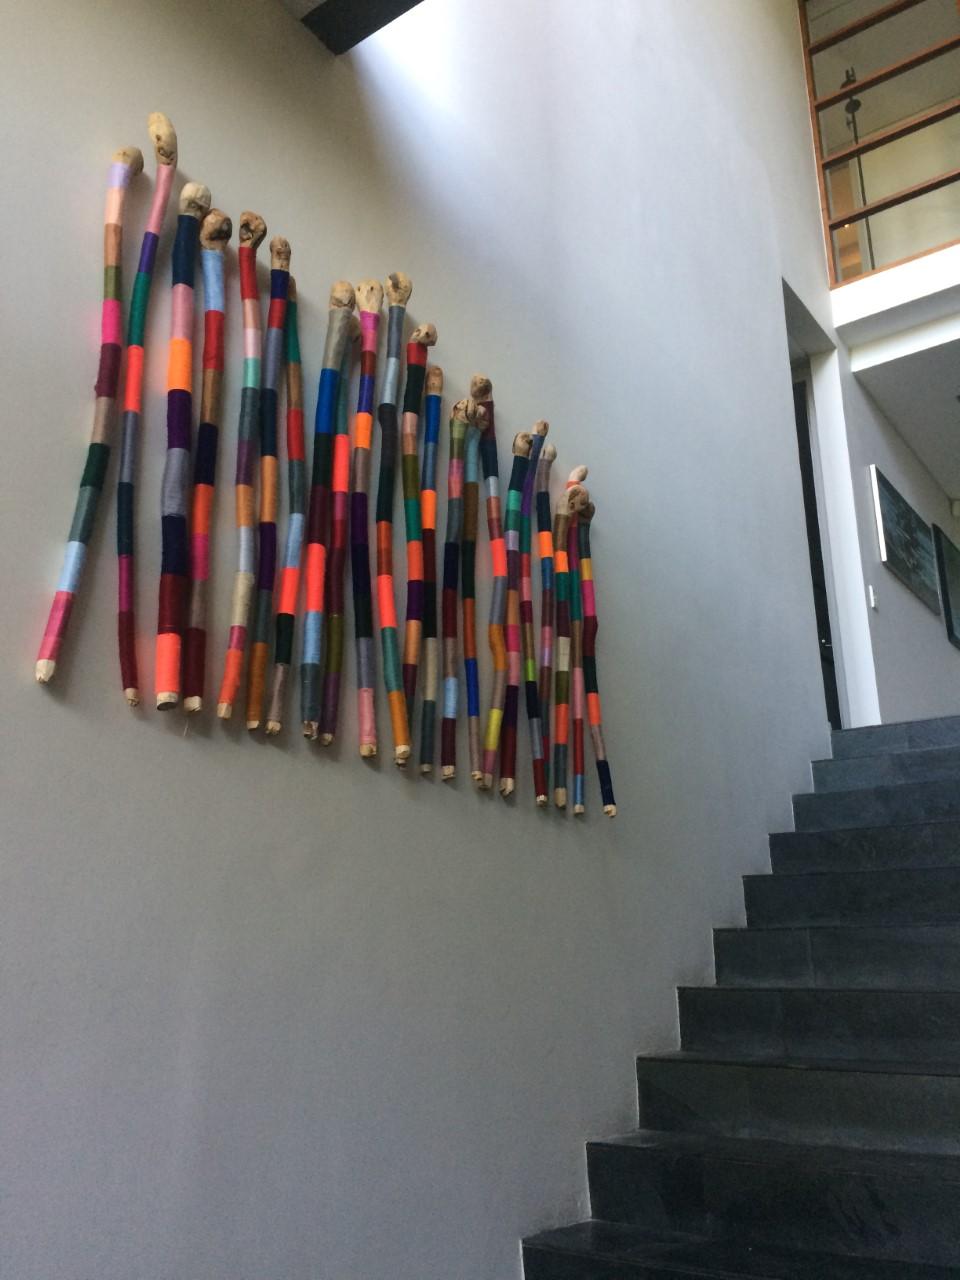 Arc-en-ciel météorique
2021
Fil à broder,  acrylique et laine sur bois
dimensions variables
300 $ par bâton

Lyndi Sales est une artiste basée au Cap, en Afrique du Sud. Elle a créé une série d'installations et d'œuvres d'art au cours des seize